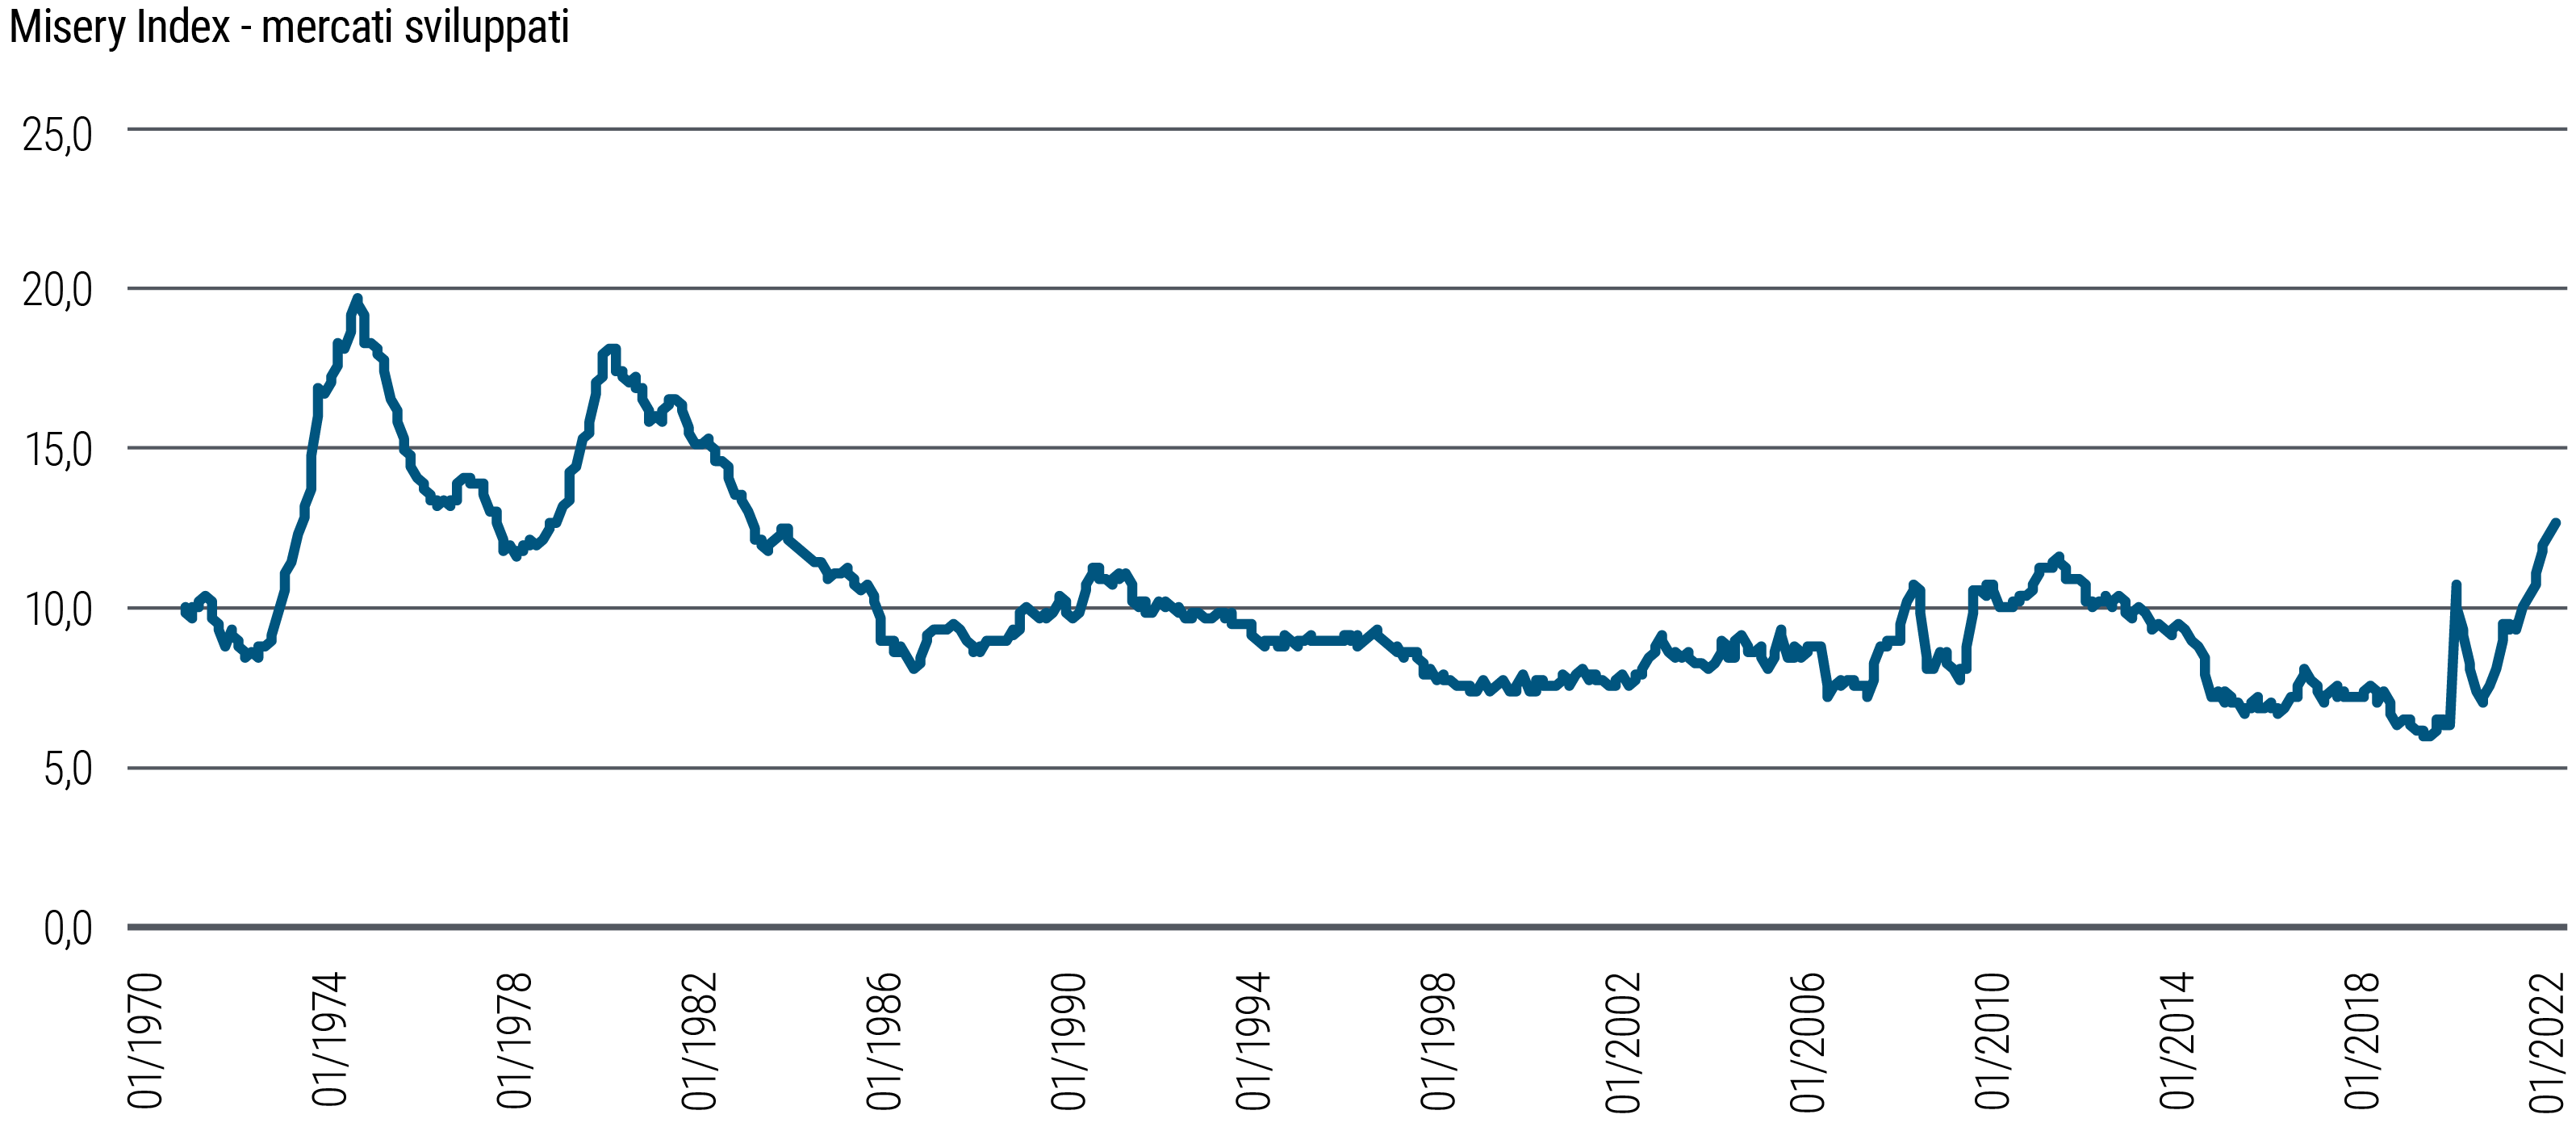 Il grafico lineare del misery index mostra la somma di inflazione e disoccupazione (entrambe misurate singolarmente come percentuale) in cinque economie dei mercati sviluppati nel periodo da gennaio 1970 a settembre 2022. Due vistosi picchi, di 20 nel 1975 e di 18 nel 1982, indicano periodi di notevole difficoltà economica. A partire dai primi anni 80, il valore del misery index ha avuto una tendenza in generale discendente, raggiungendo il minimo di 6 a novembre 2019, dopo di che ha avuto una brusca risalita, con un picco intorno all’inizio della pandemia di COVID-19 a cui è seguita una ridiscesa di breve periodo per poi tornare a risalire in modo deciso. Al terzo trimestre 2022 il misery index ha raggiunto un valore di quasi 13. 